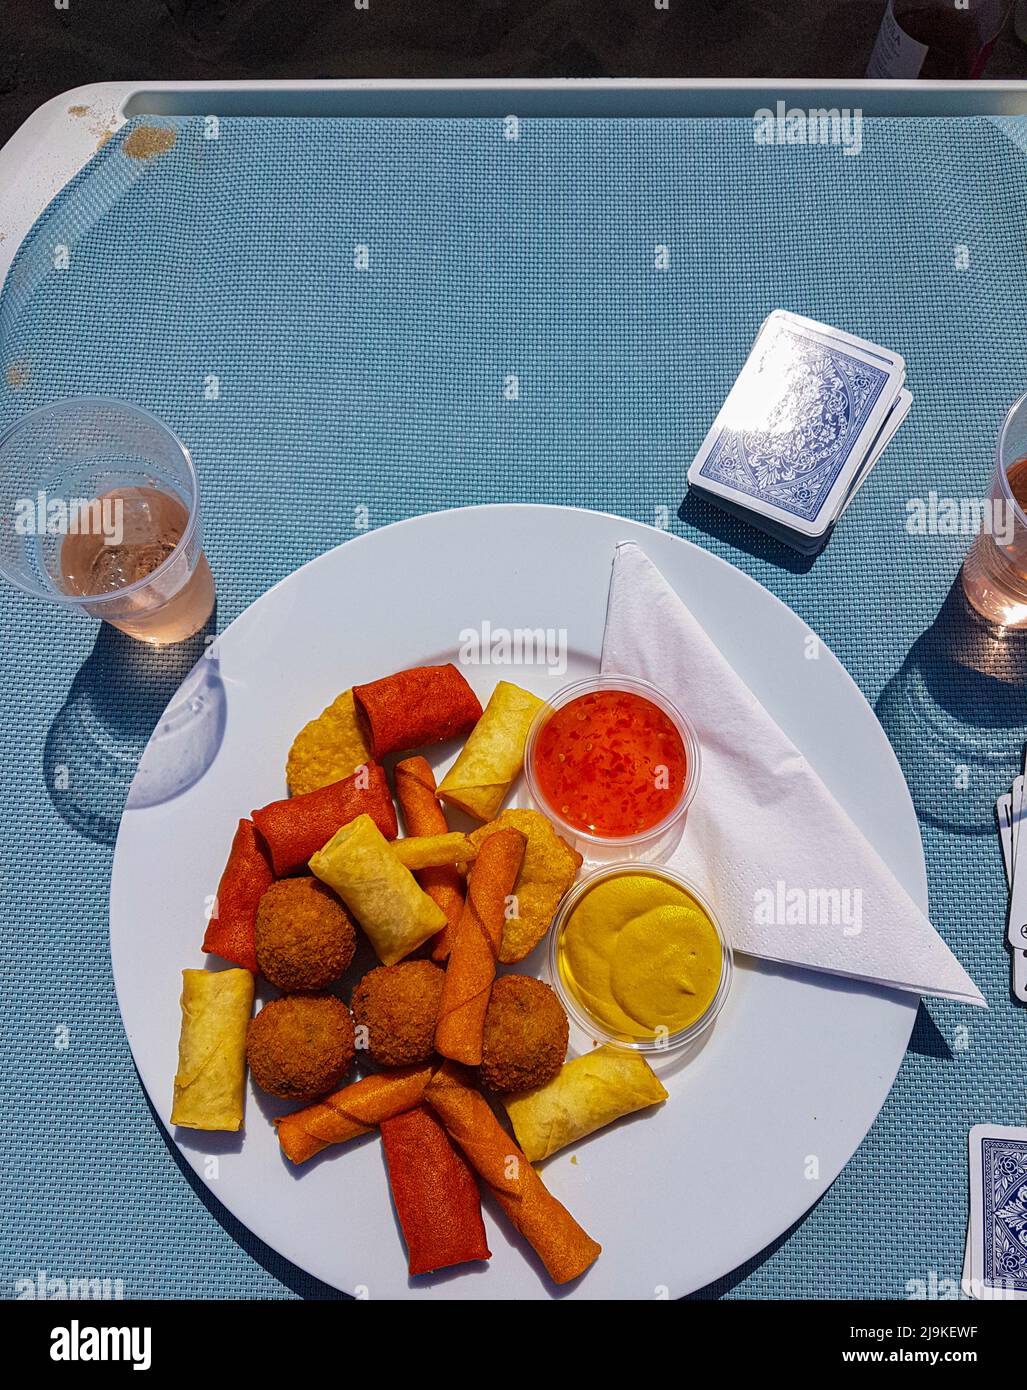 Köstliche verschiedene Snacks auf einem Teller, der sich auf einem Strandbett befindet, mit einer Tasse Rosenwein mit Eis und einem Kartenspiel daneben Stockfoto